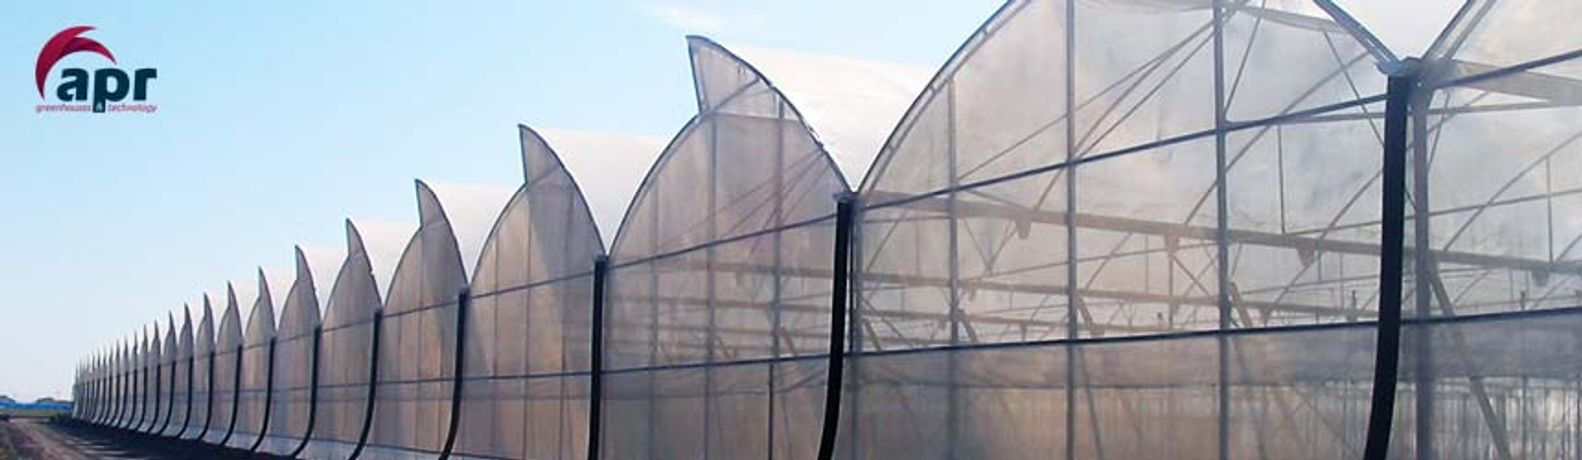 Novedades - Tropical Greenhouses